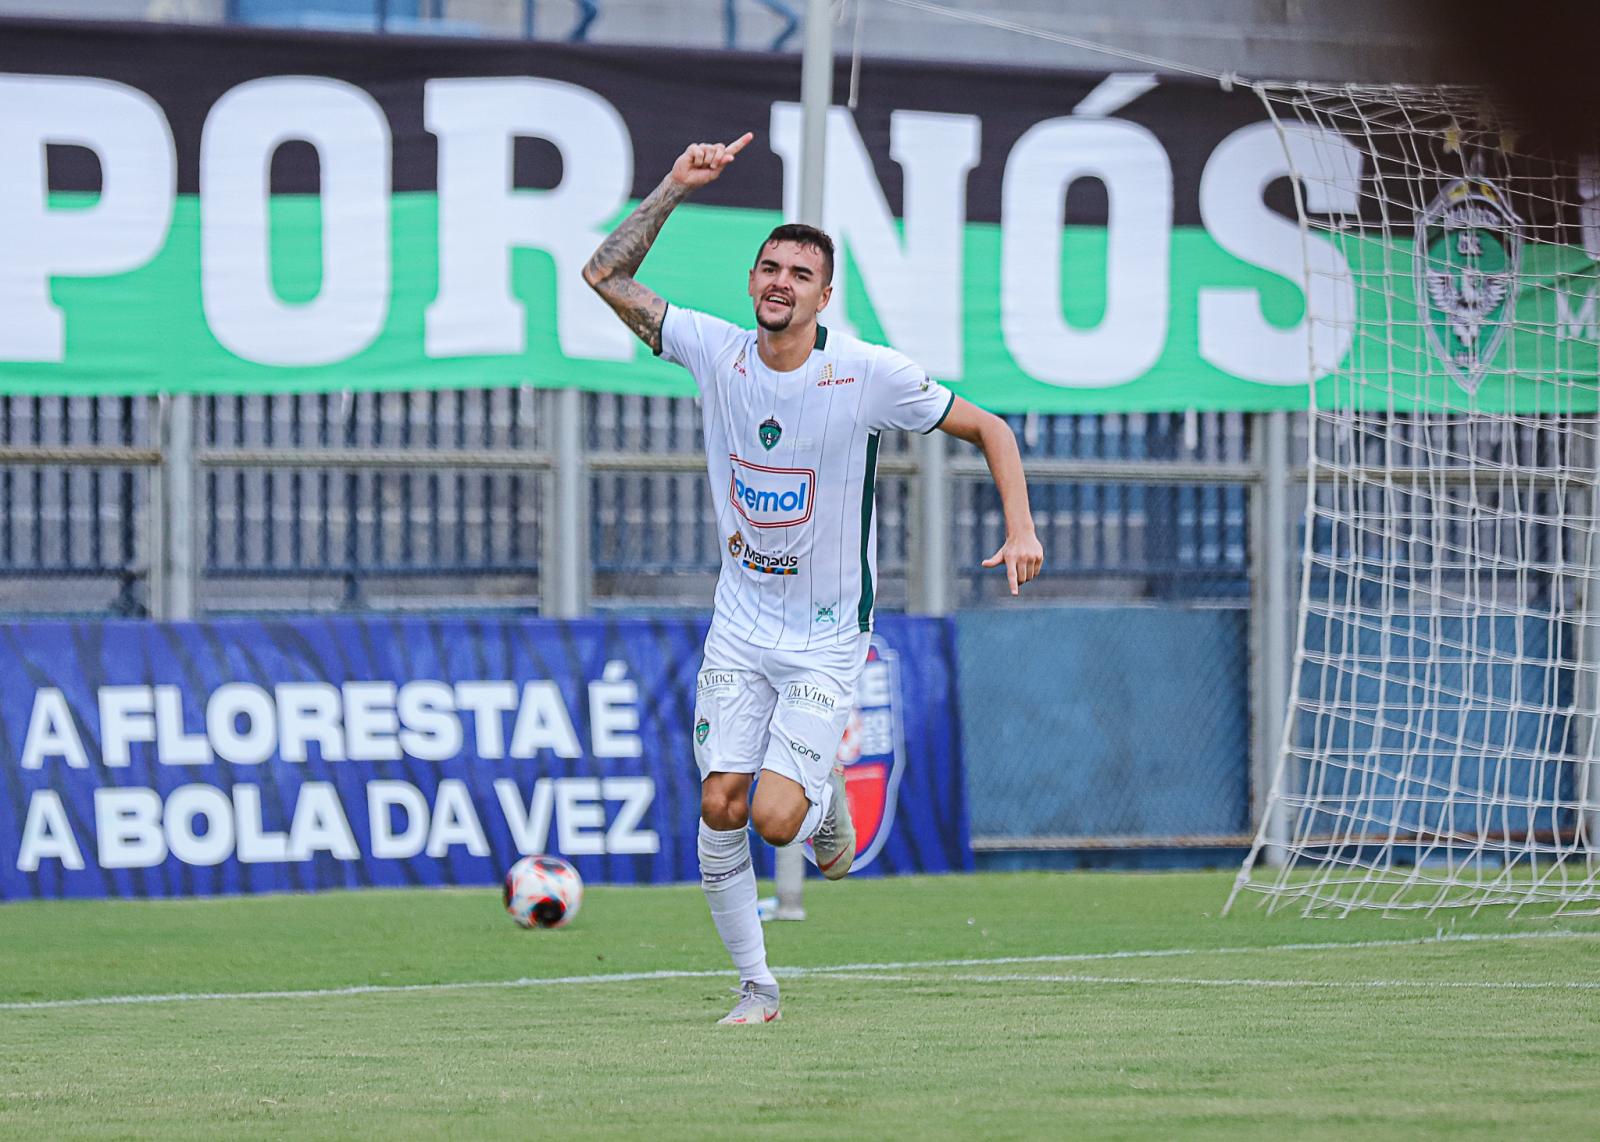 Manaus FC anuncia retorno do zagueiro Gutierrez, campeão amazonense em 2022